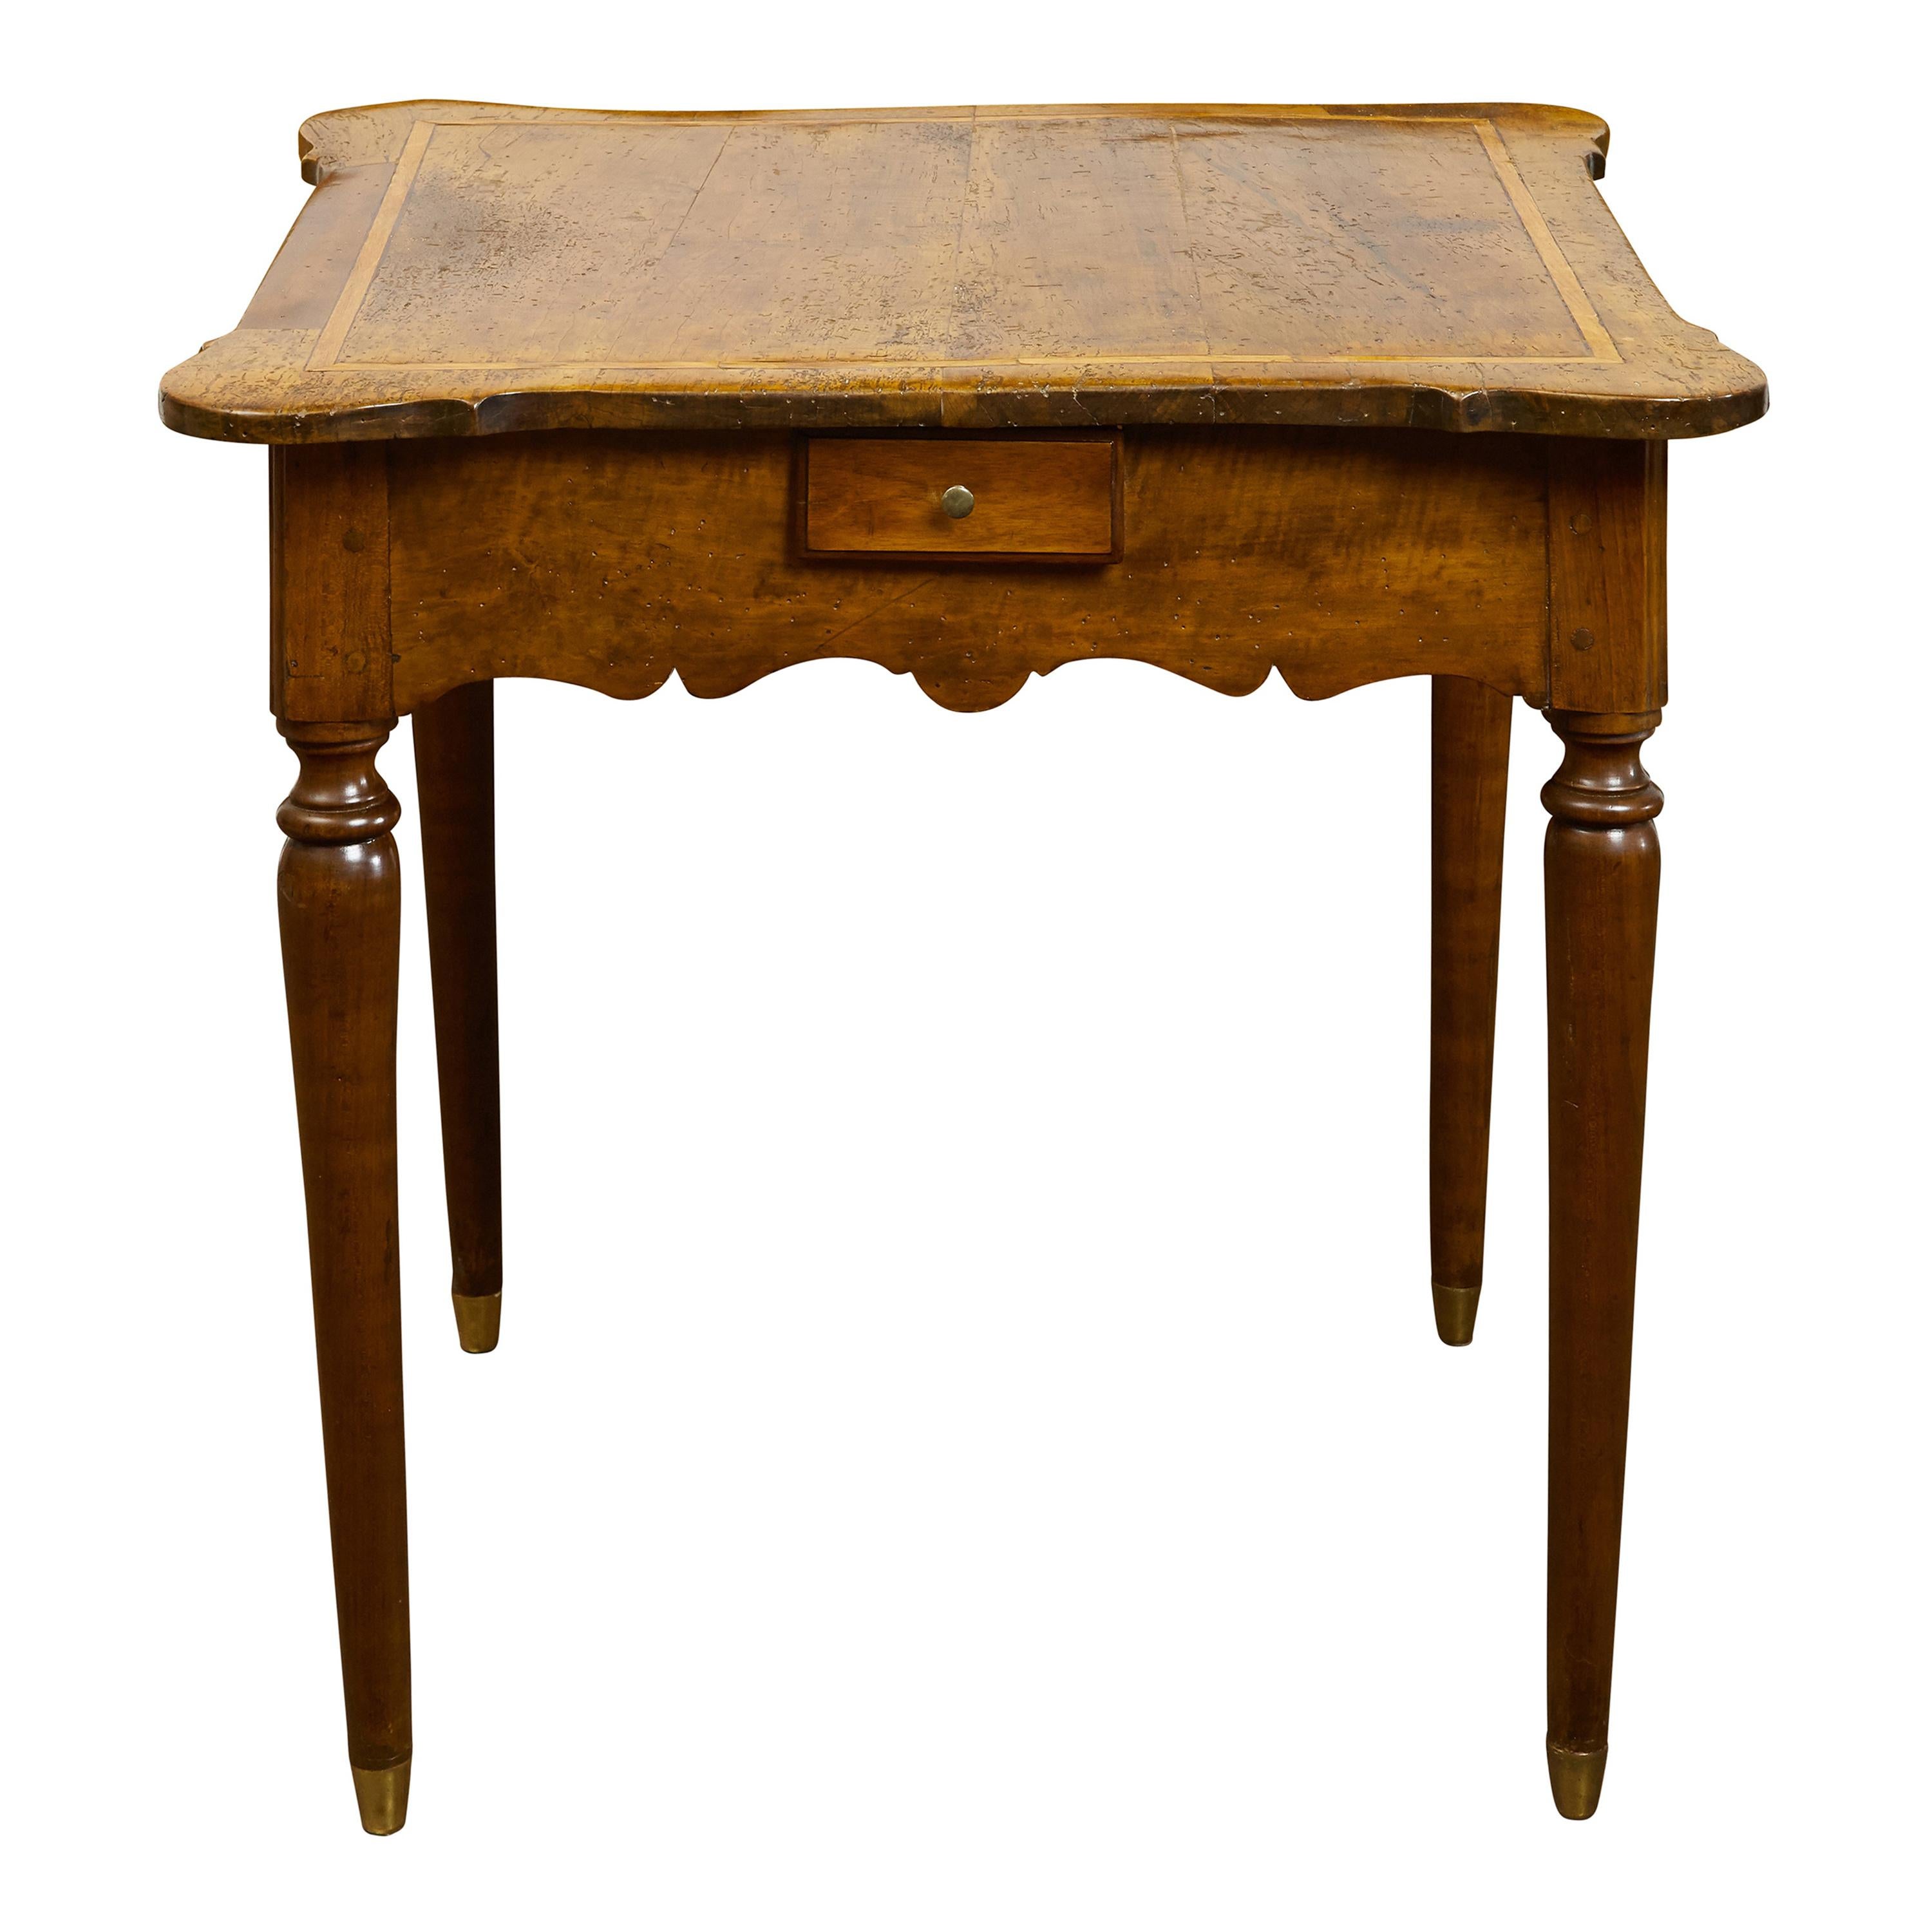 Französischer Nussbaumtisch aus den 1800er Jahren mit Bändern, vier kleinen Schubladen und geschnitzter Schürze